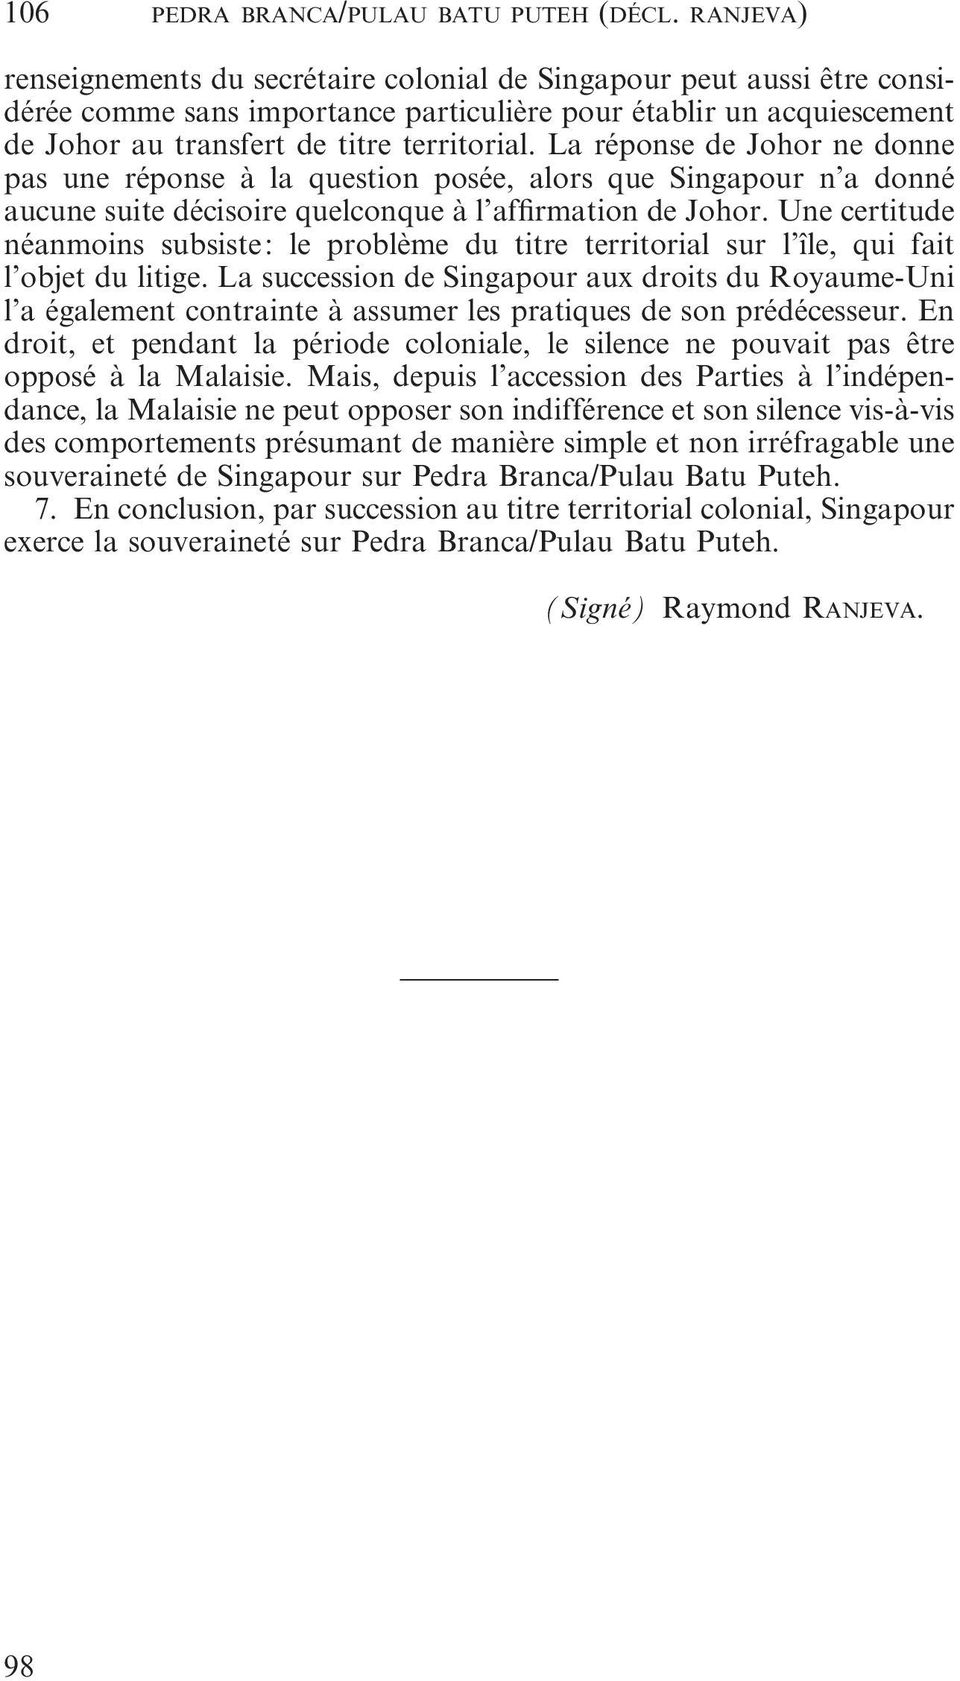 La réponse de Johor ne donne pas une réponse à la question posée, alors que Singapour n a donné aucune suite décisoire quelconque à l affirmation de Johor.